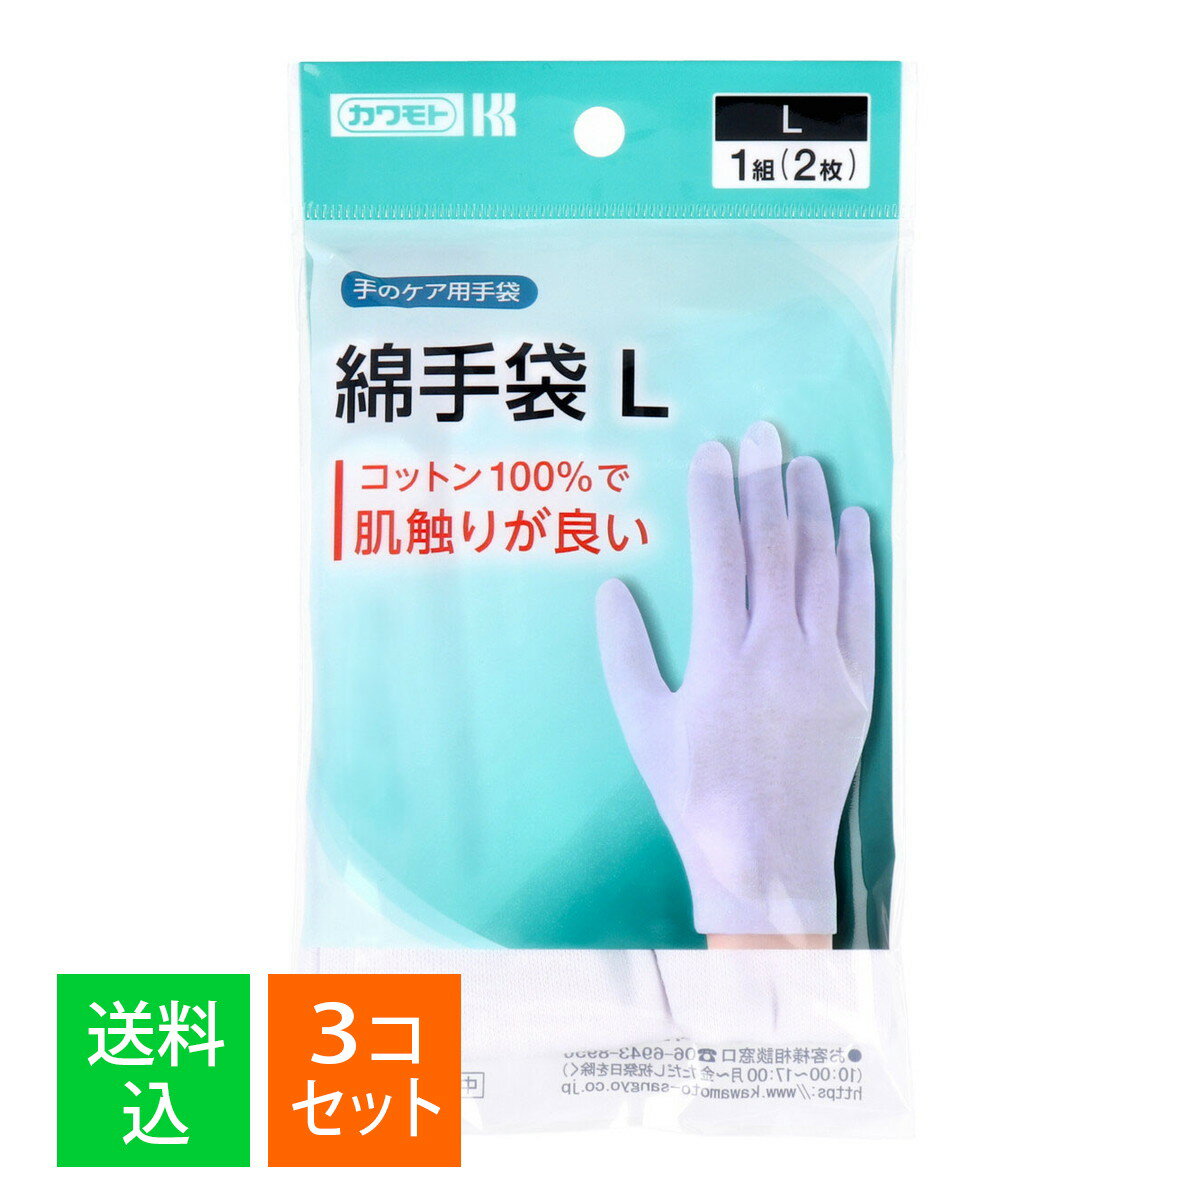 【×3個セット メール便送料無料】川本産業 カワモト 綿手袋 L 1組(2枚)入